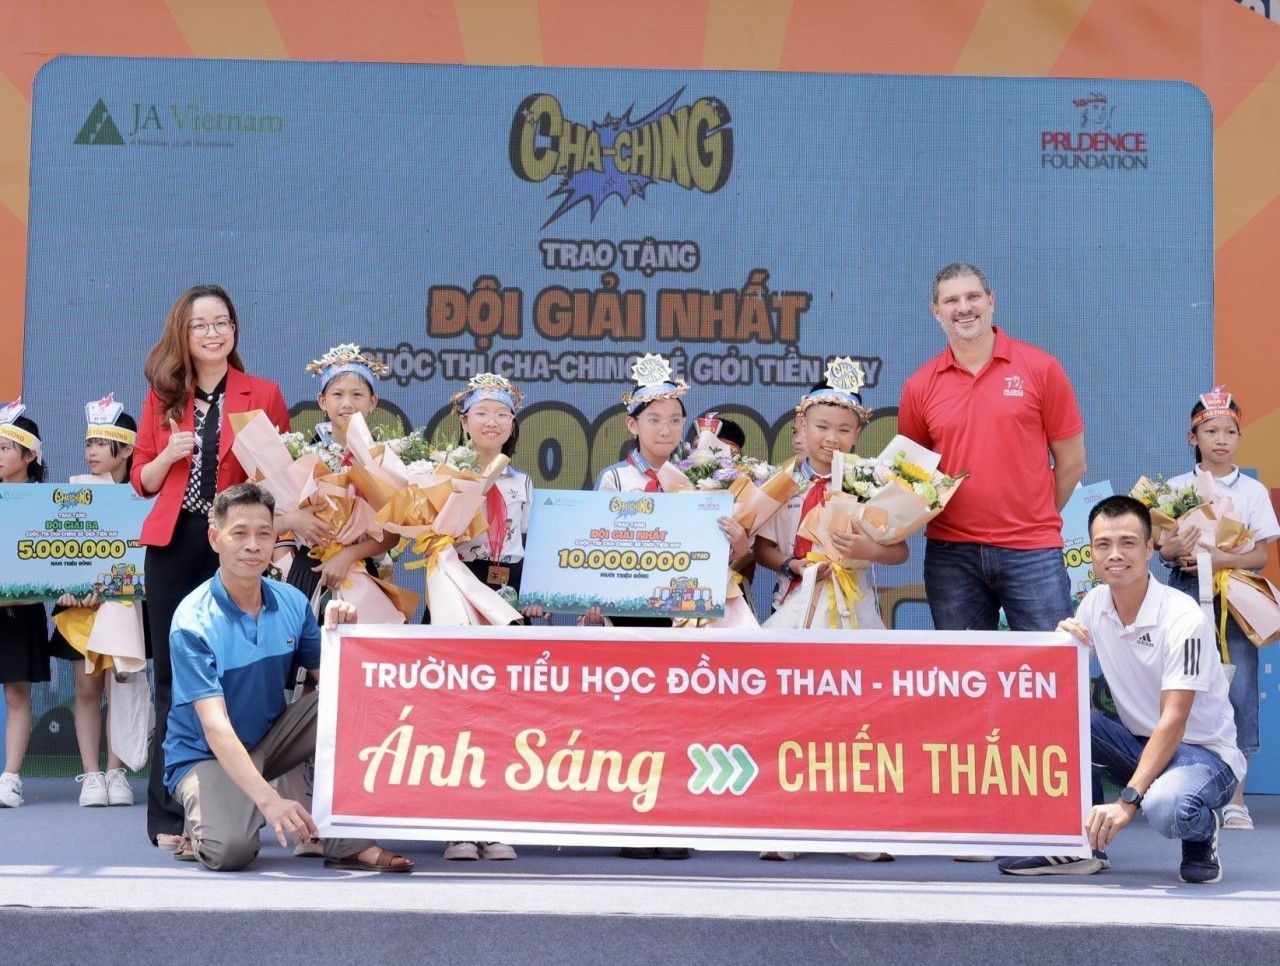 Hàng trăm học sinh được trải nghiệm kỹ năng quản lý tiền tại Ngày hội Cha-Ching